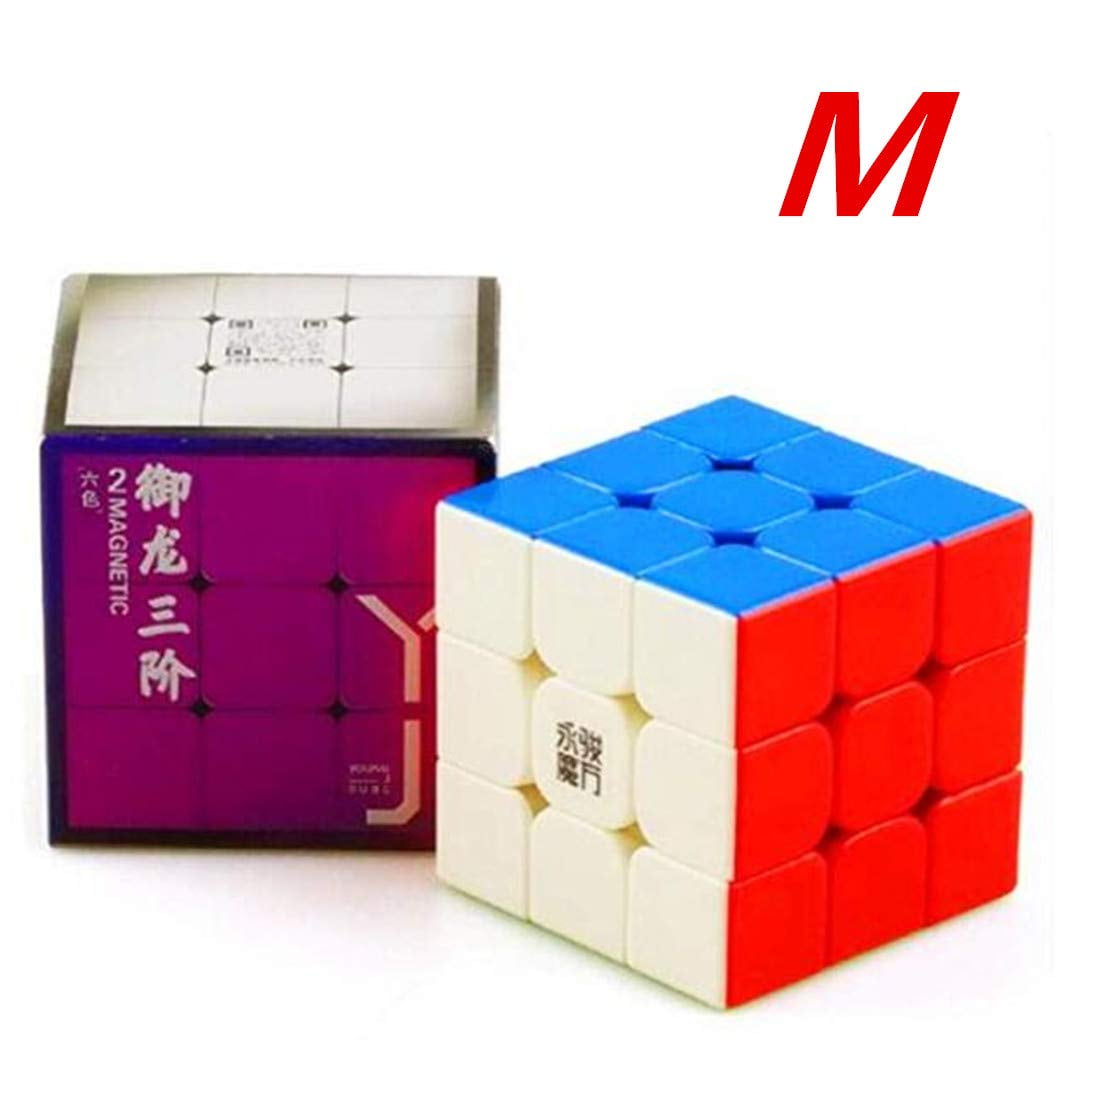 YJ YuLong V2 M 3x3x3 3x3 Stickerless Magnetic Magic Cube Speed 